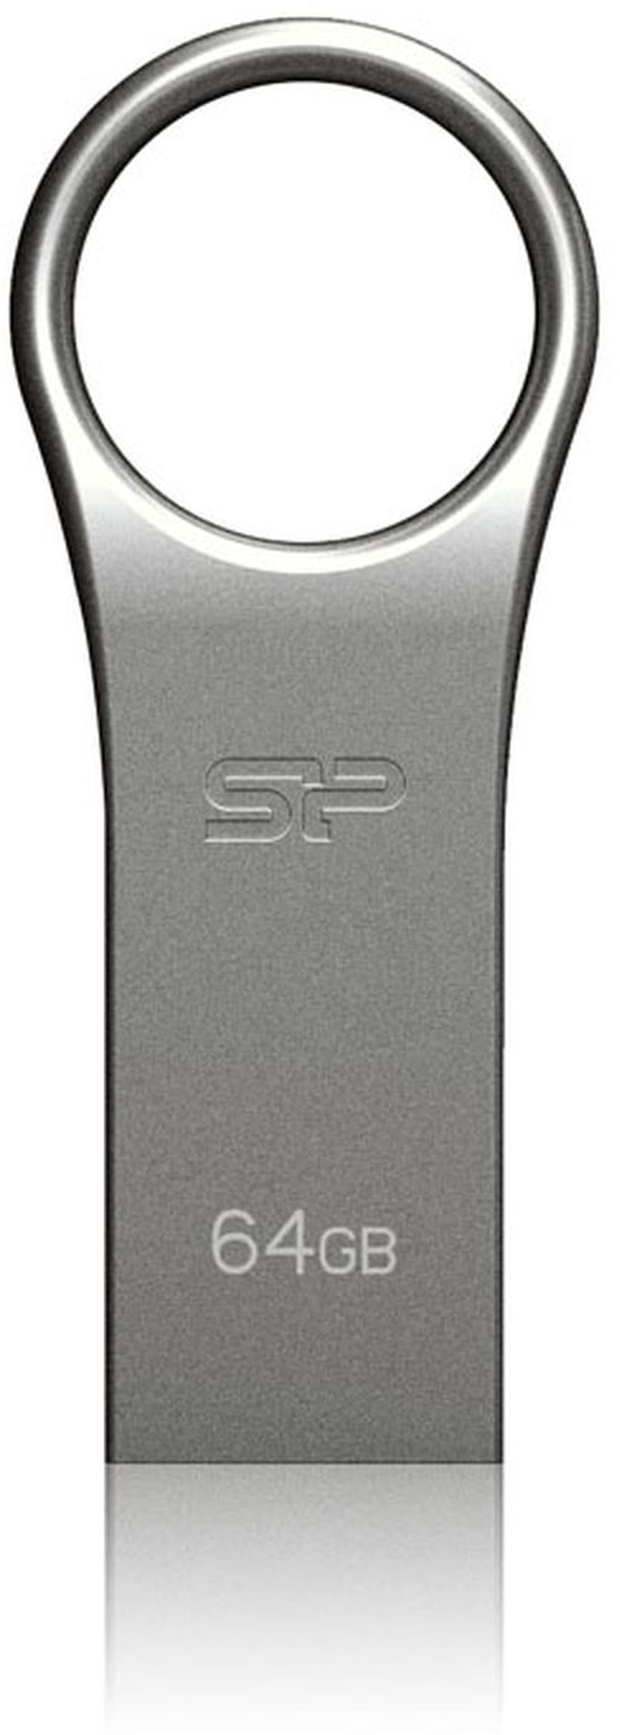 Silicon Power Firma F80 64GB USB 2.0 (Silver)